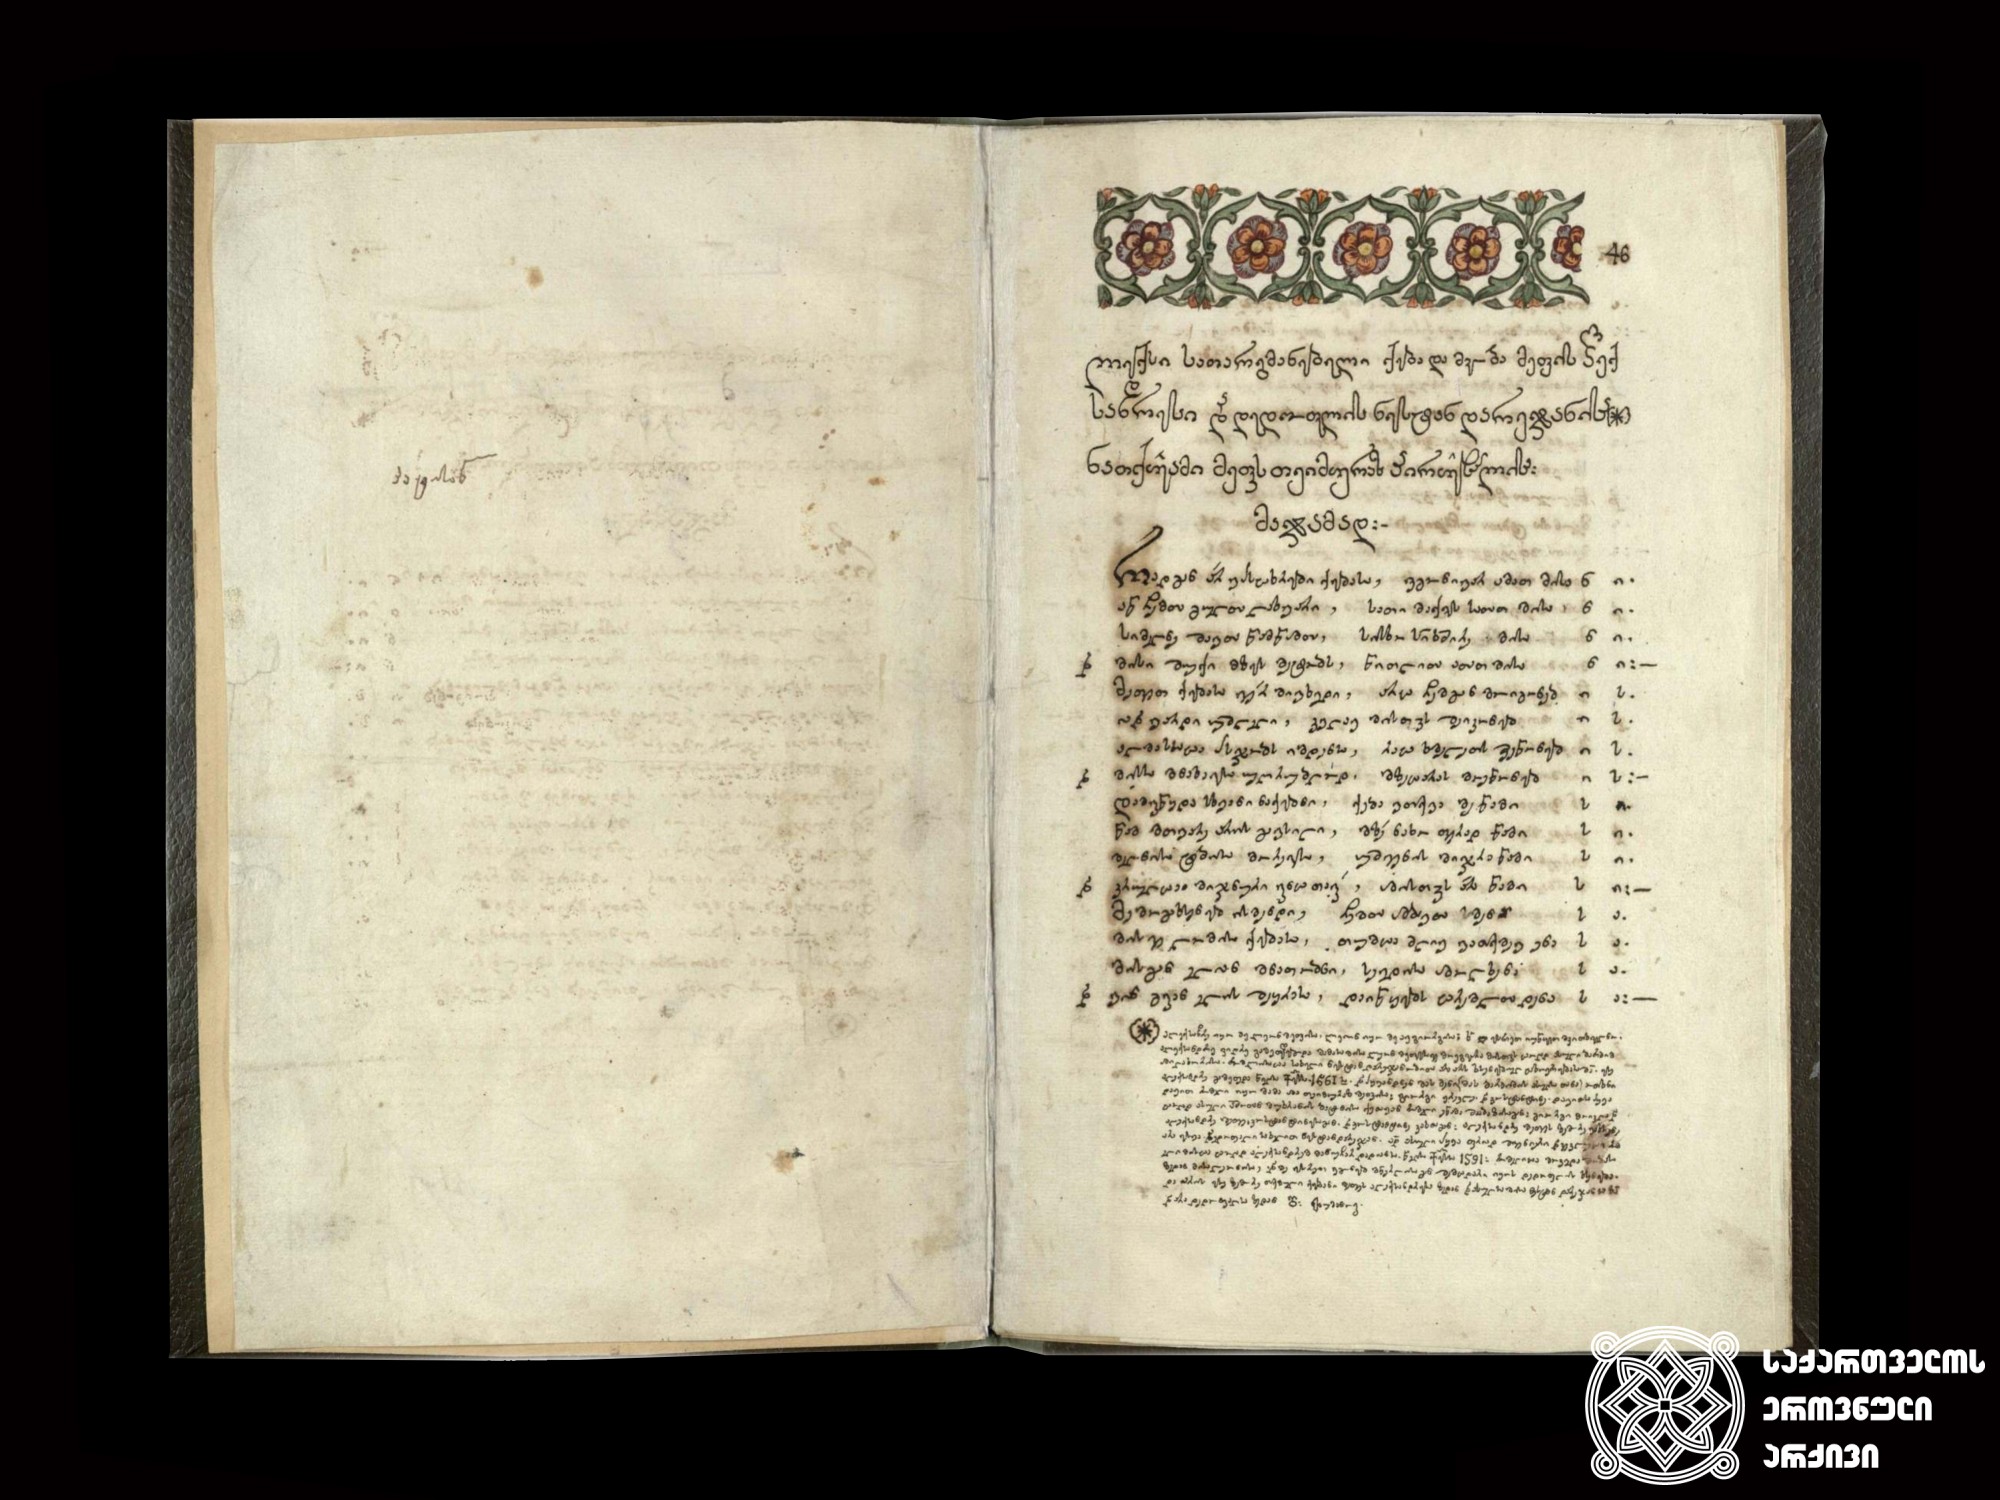 მხედრული. თეიმურაზ I, ლექსთა კრებული, XVIII საუკუნე. <br>
Mkhedruli script. The King Teimuraz I, collection of poems. XVIII century.